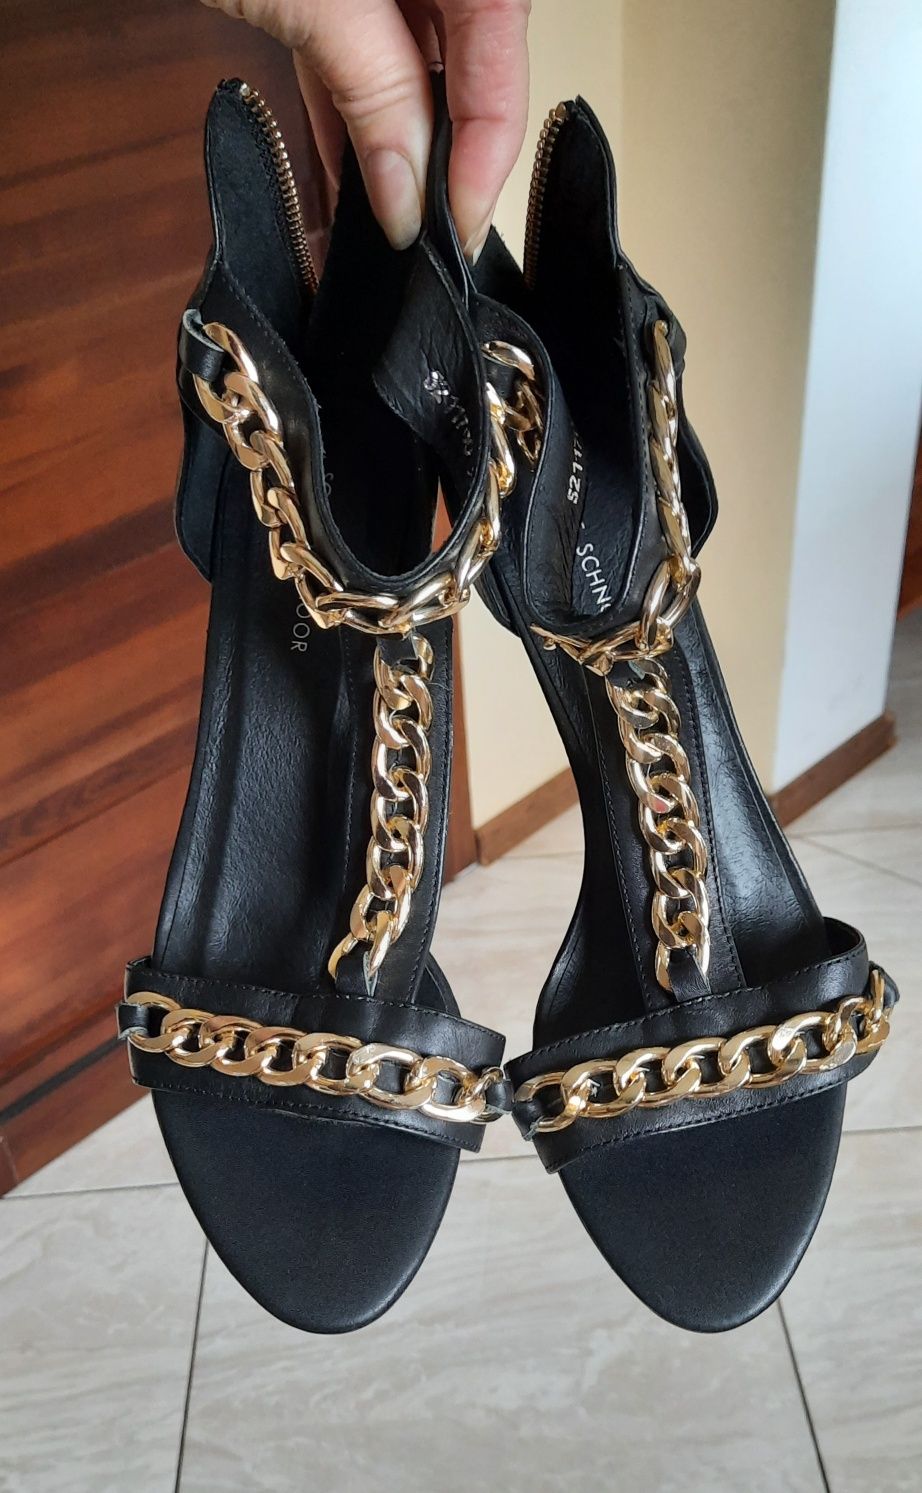 Buty sandałki ozdobione złotymi łańcuchami